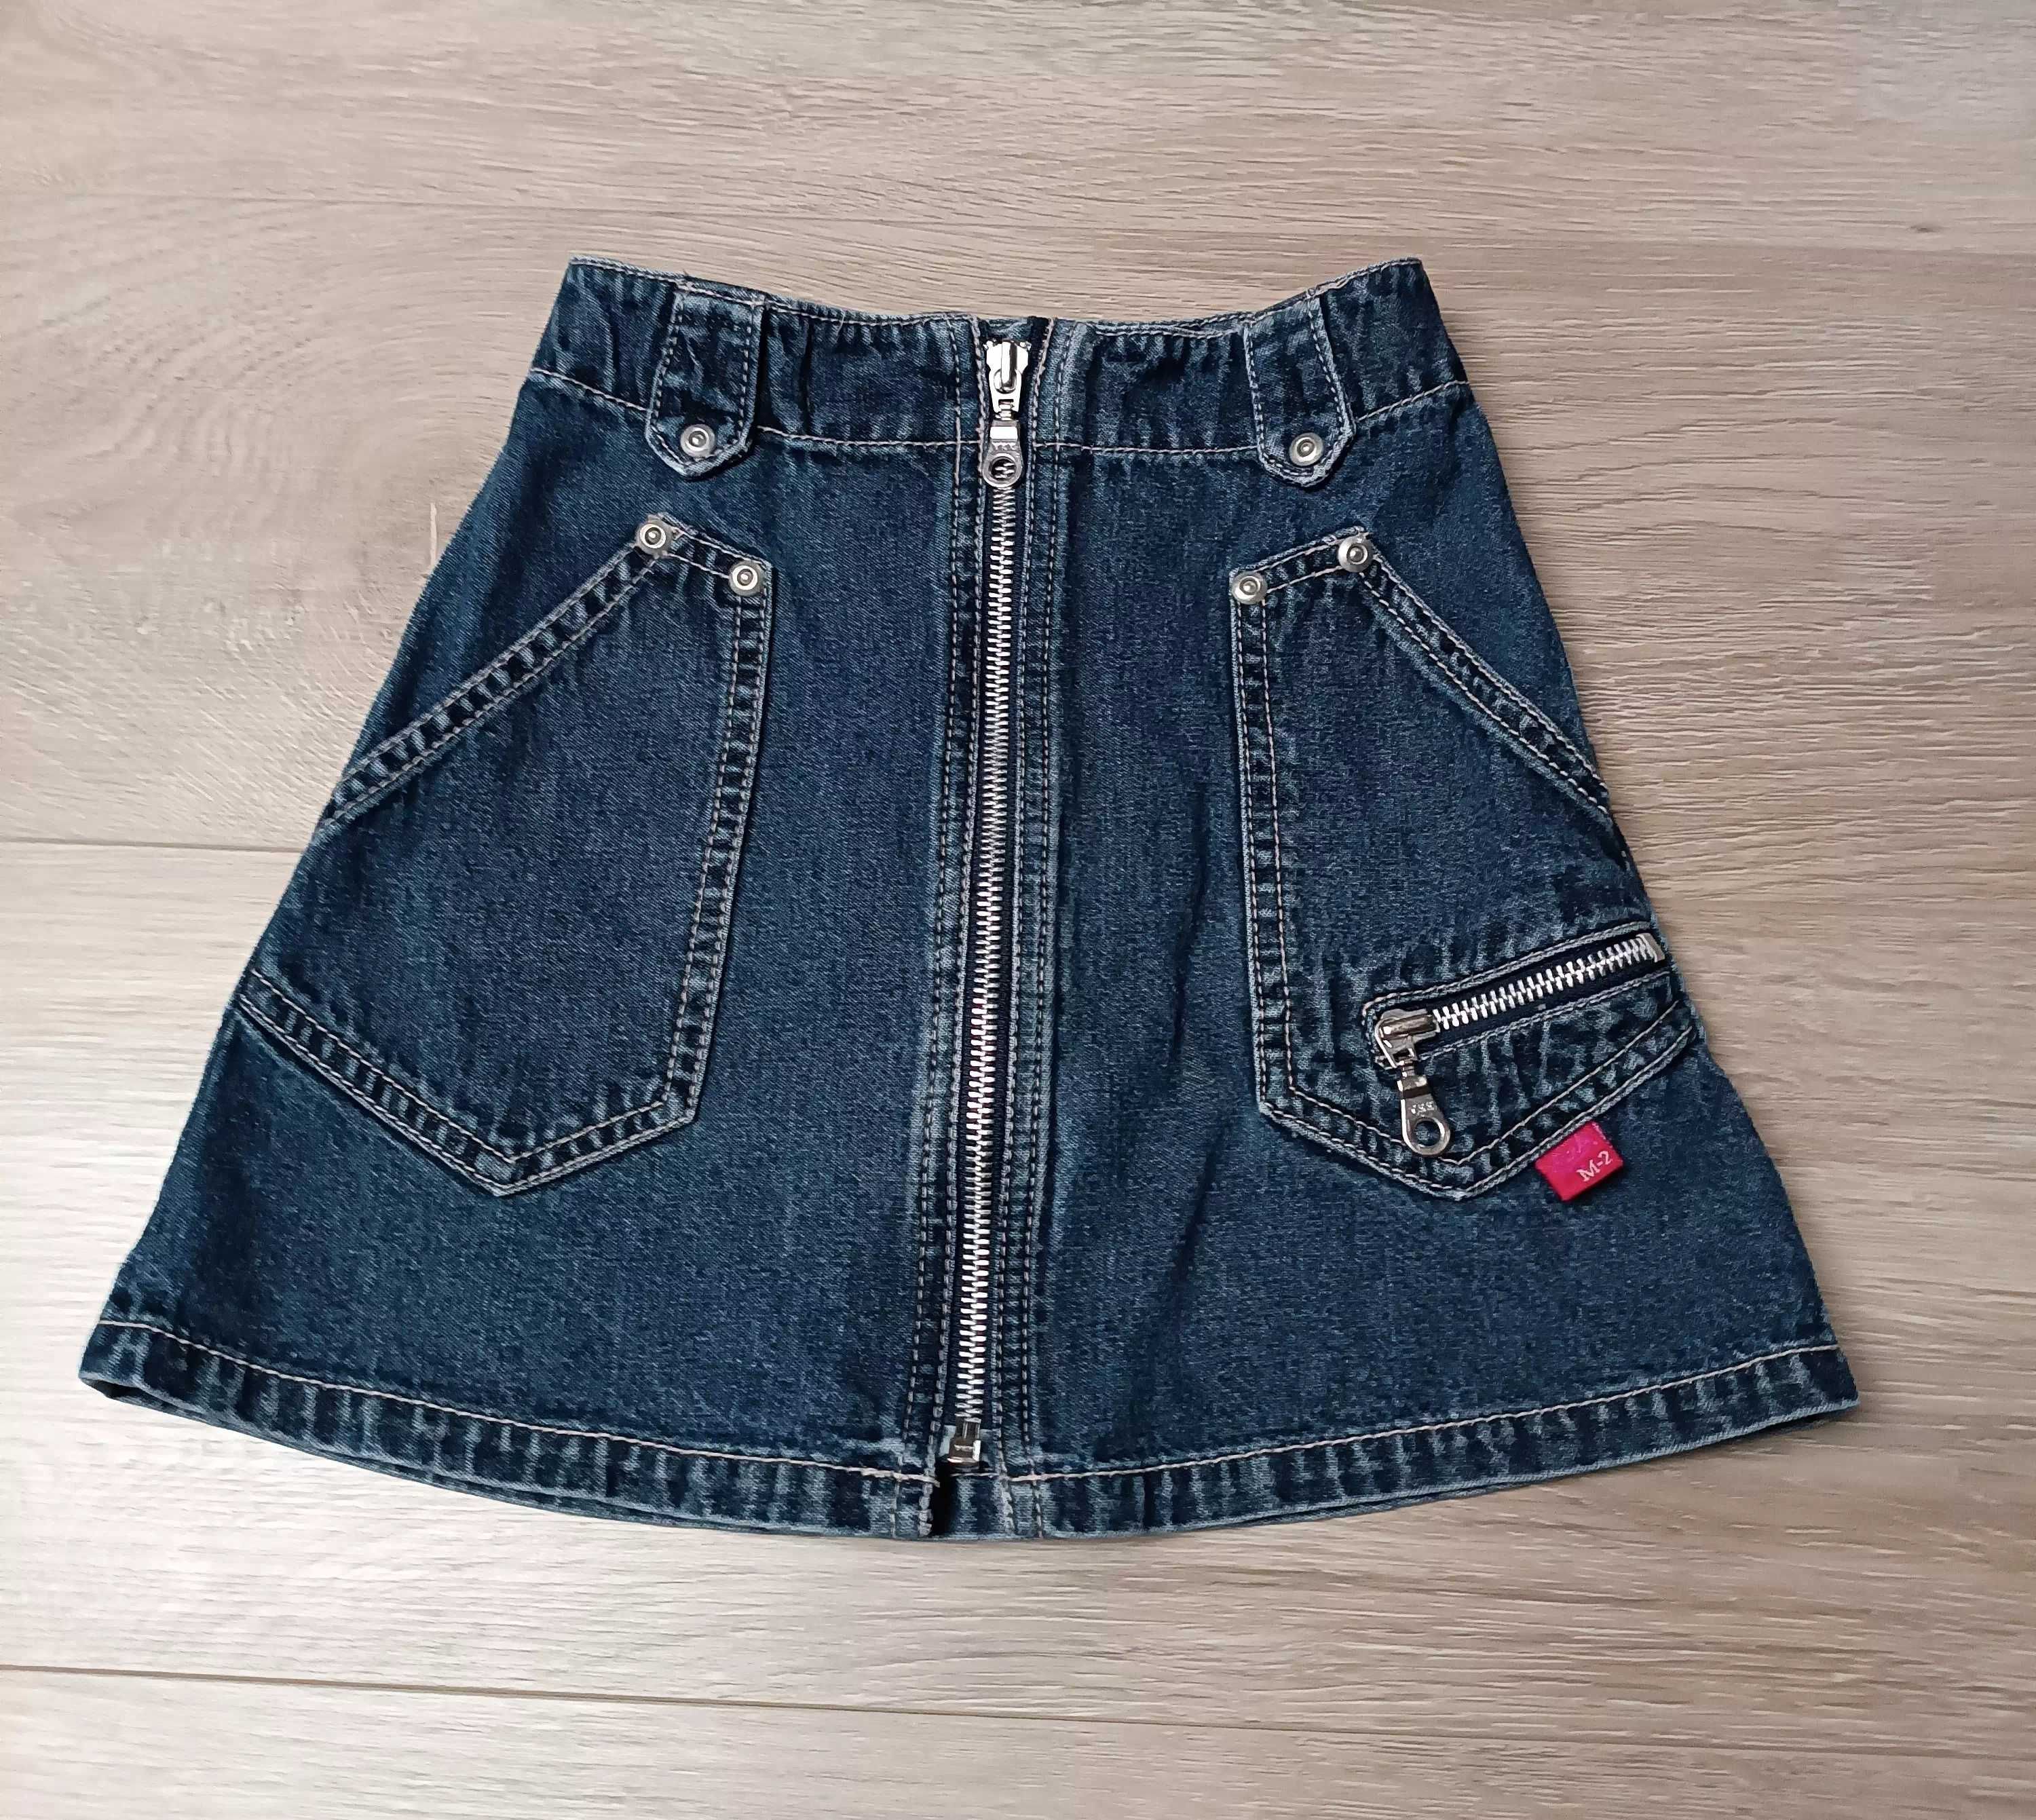 Spódniczka granatowy jeans suwaki kieszonki 'Me too' 98